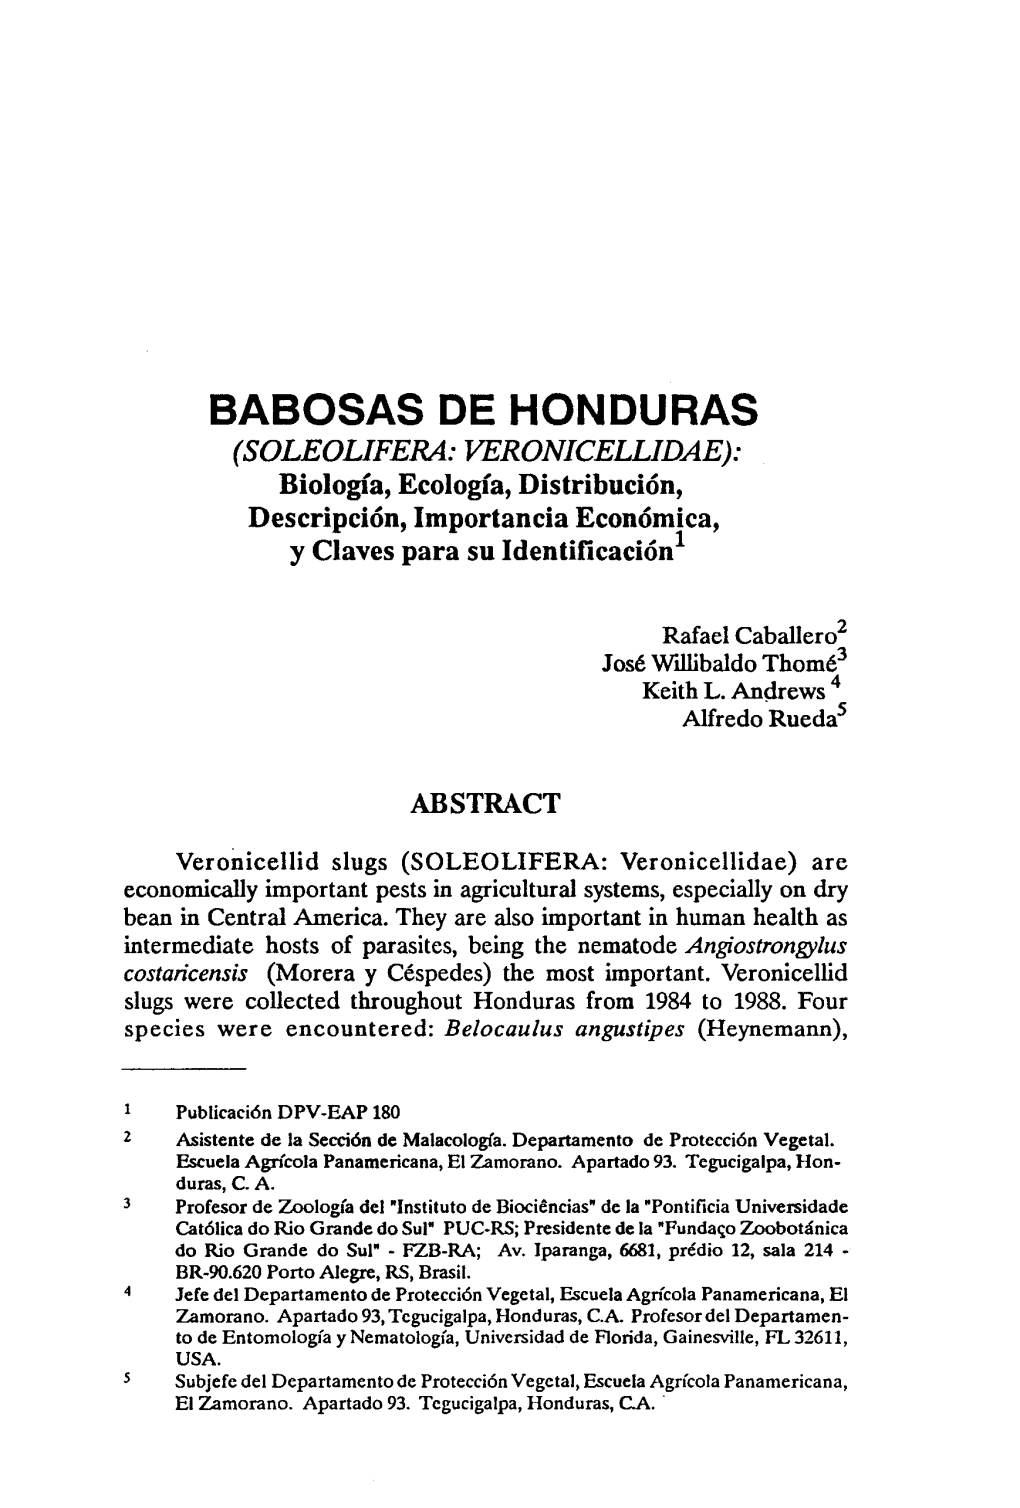 BABOSAS DE HONDURAS (SOLEOLIFERA: VERONICELLIDAE): Biología, Ecología, Distribución, Descripción, Importancia Económica, Y Claves Para Su Ldentificación1